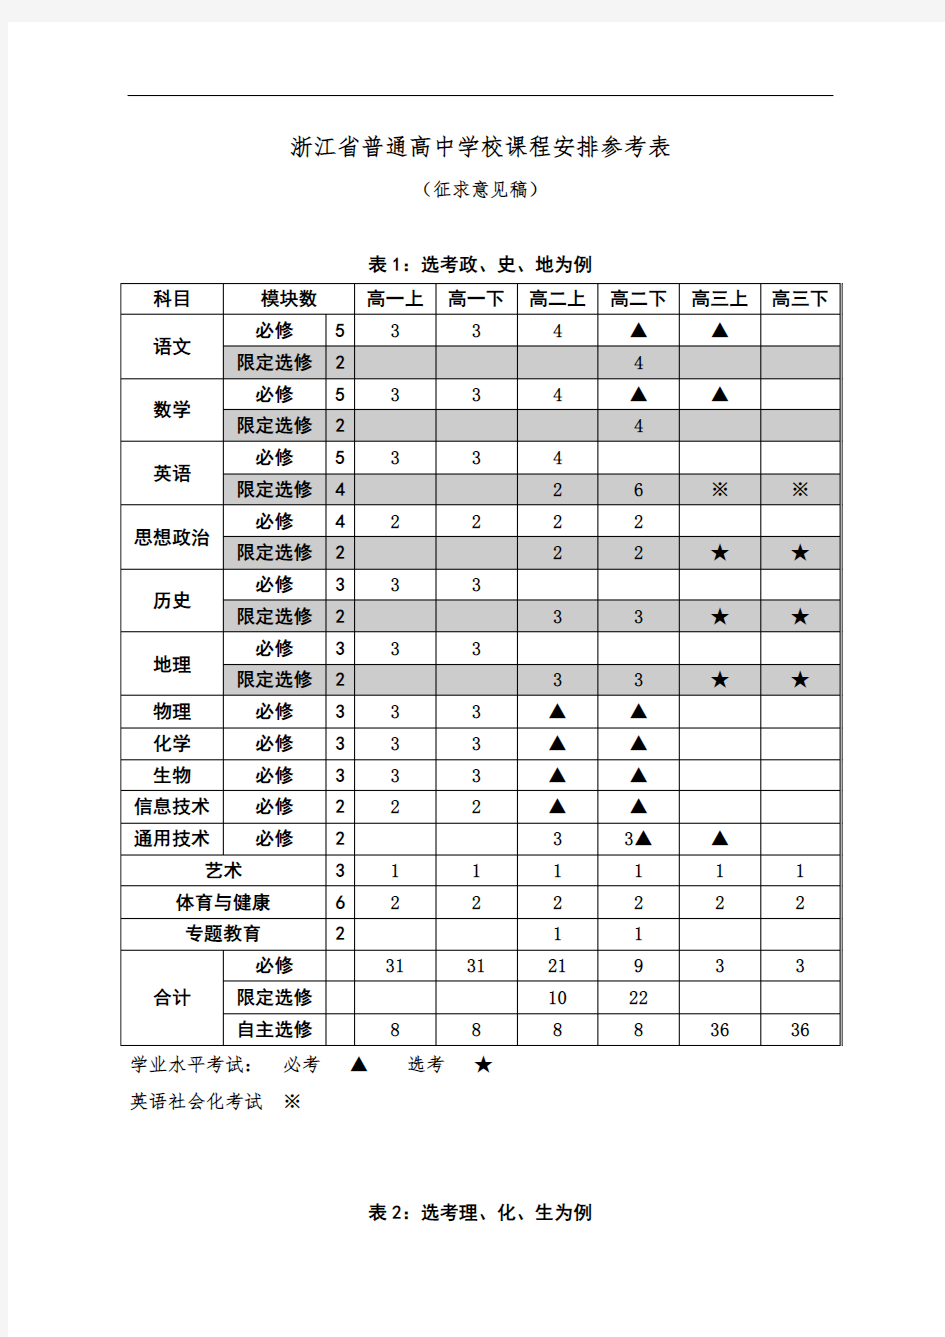 最新浙江省普通高中学校课程安排参考表教案资料